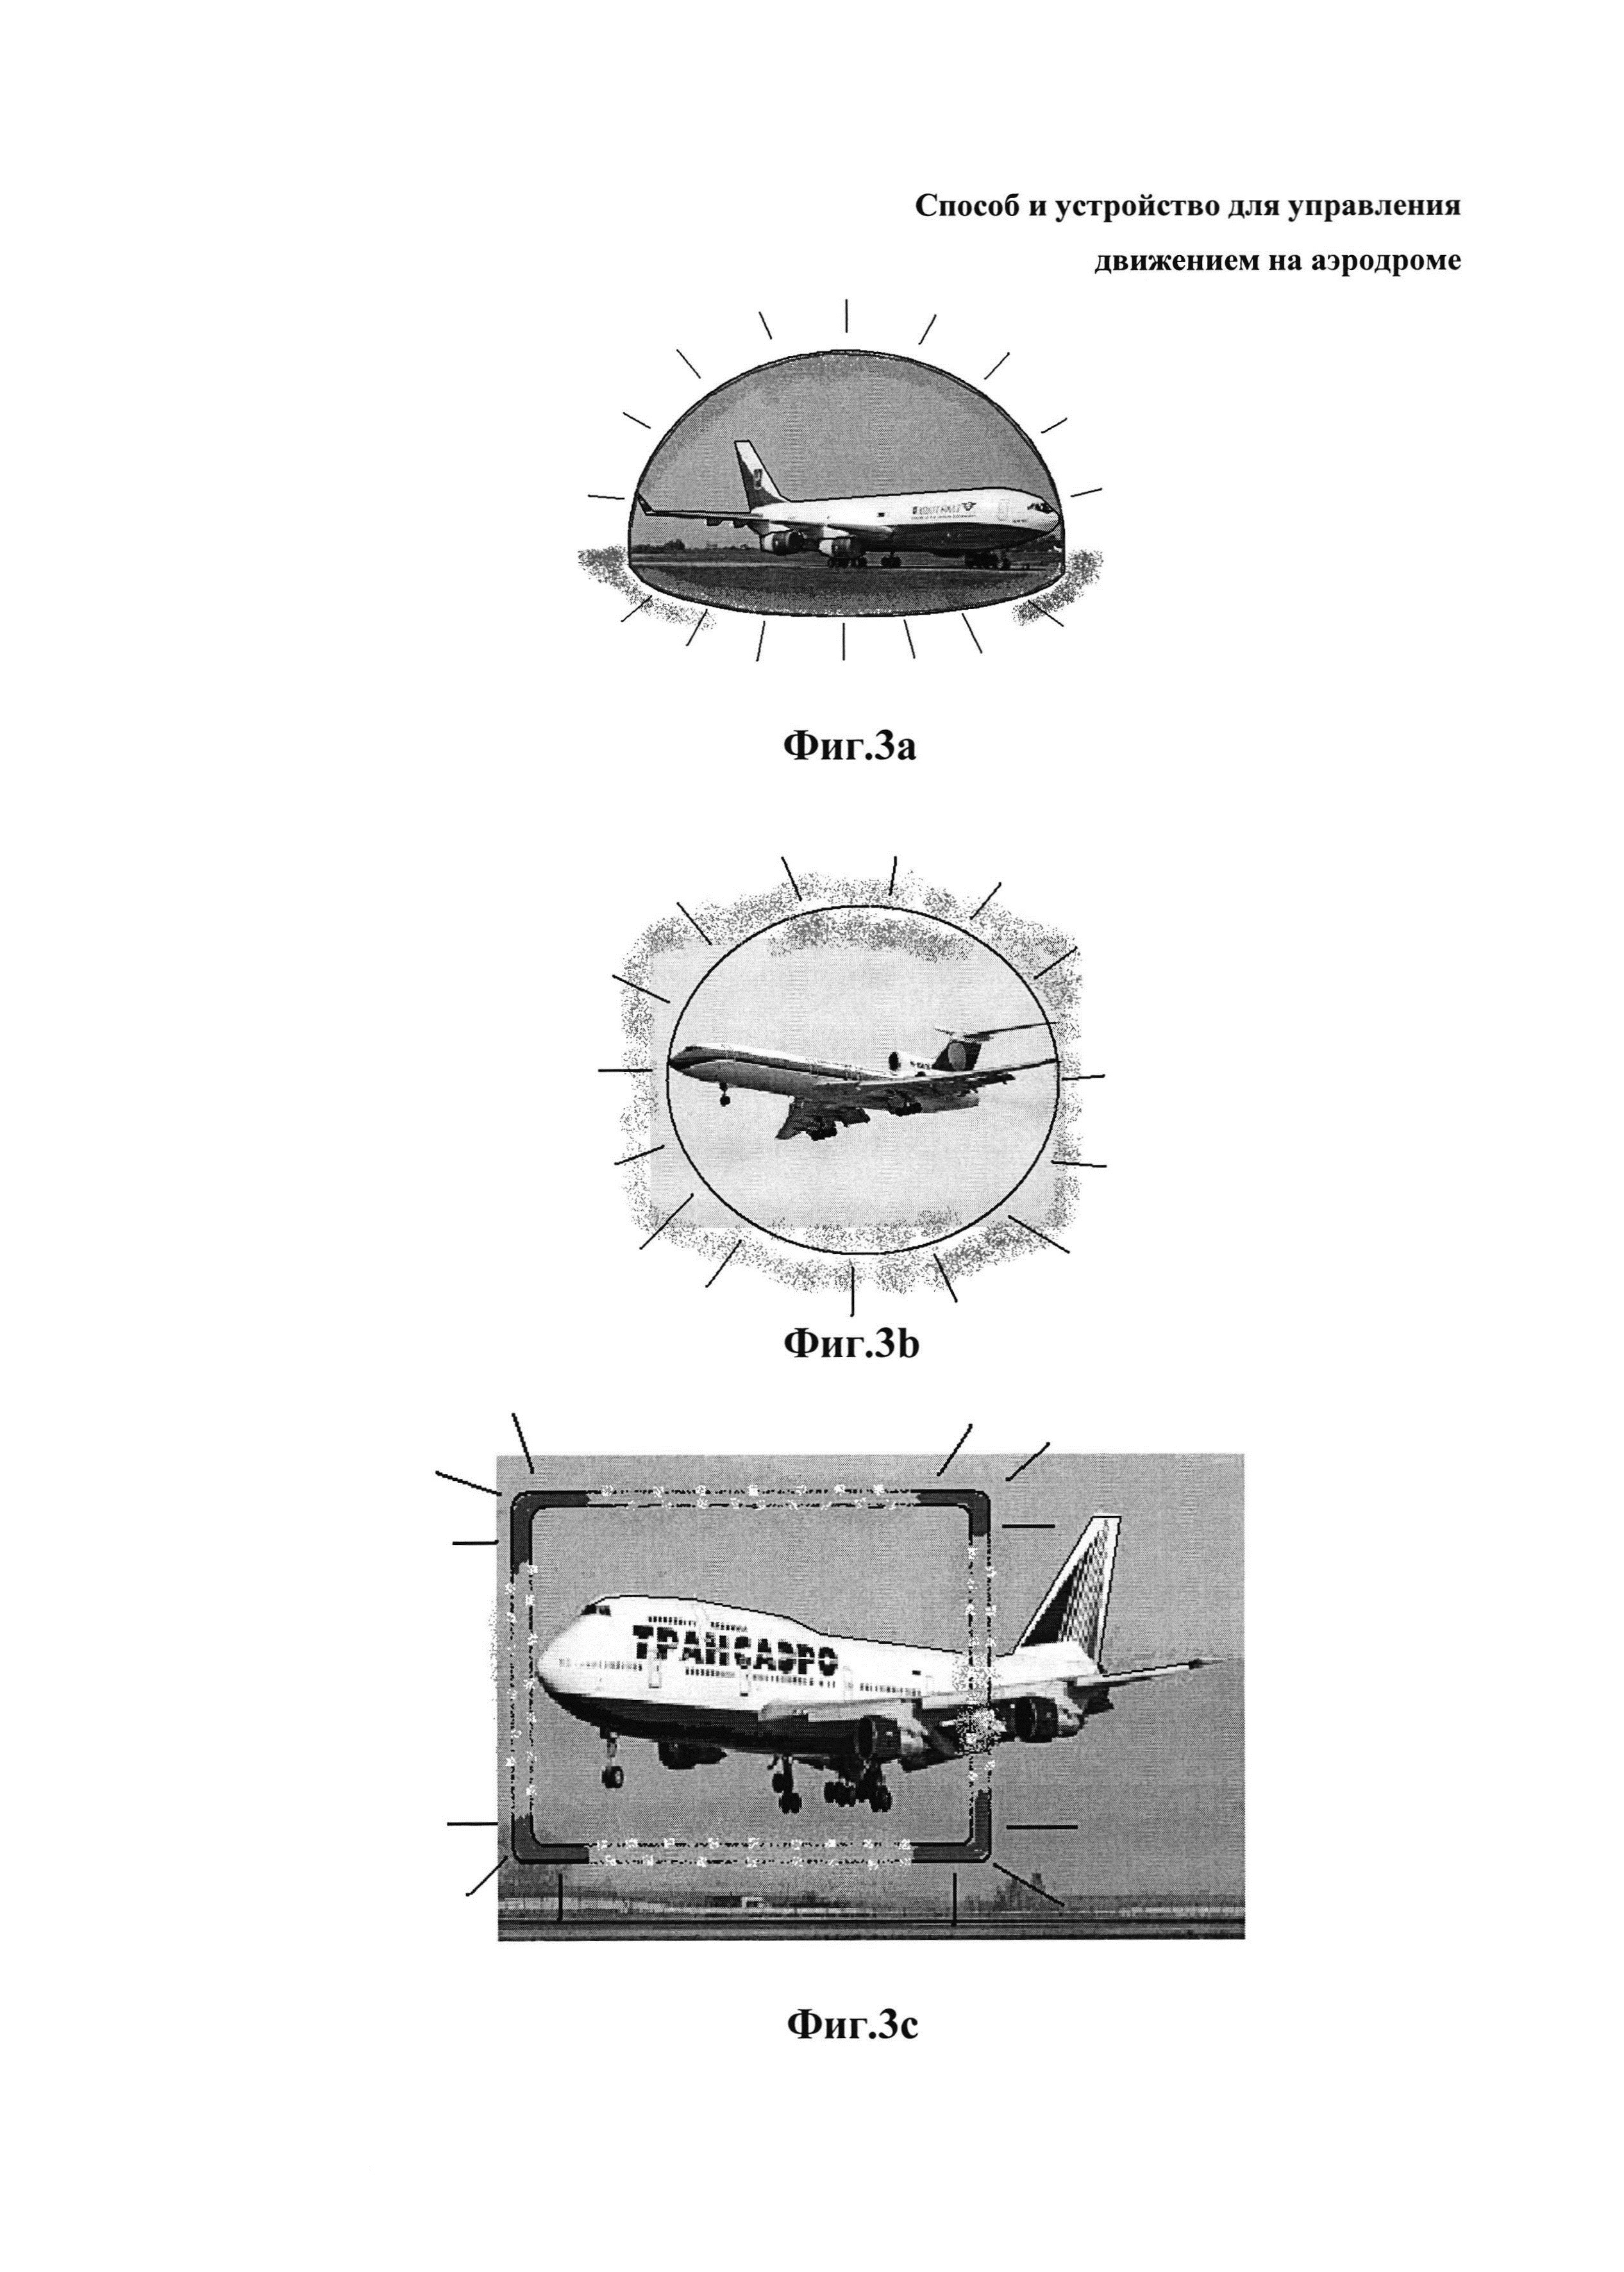 Способ и устройство для управления движением на аэродроме